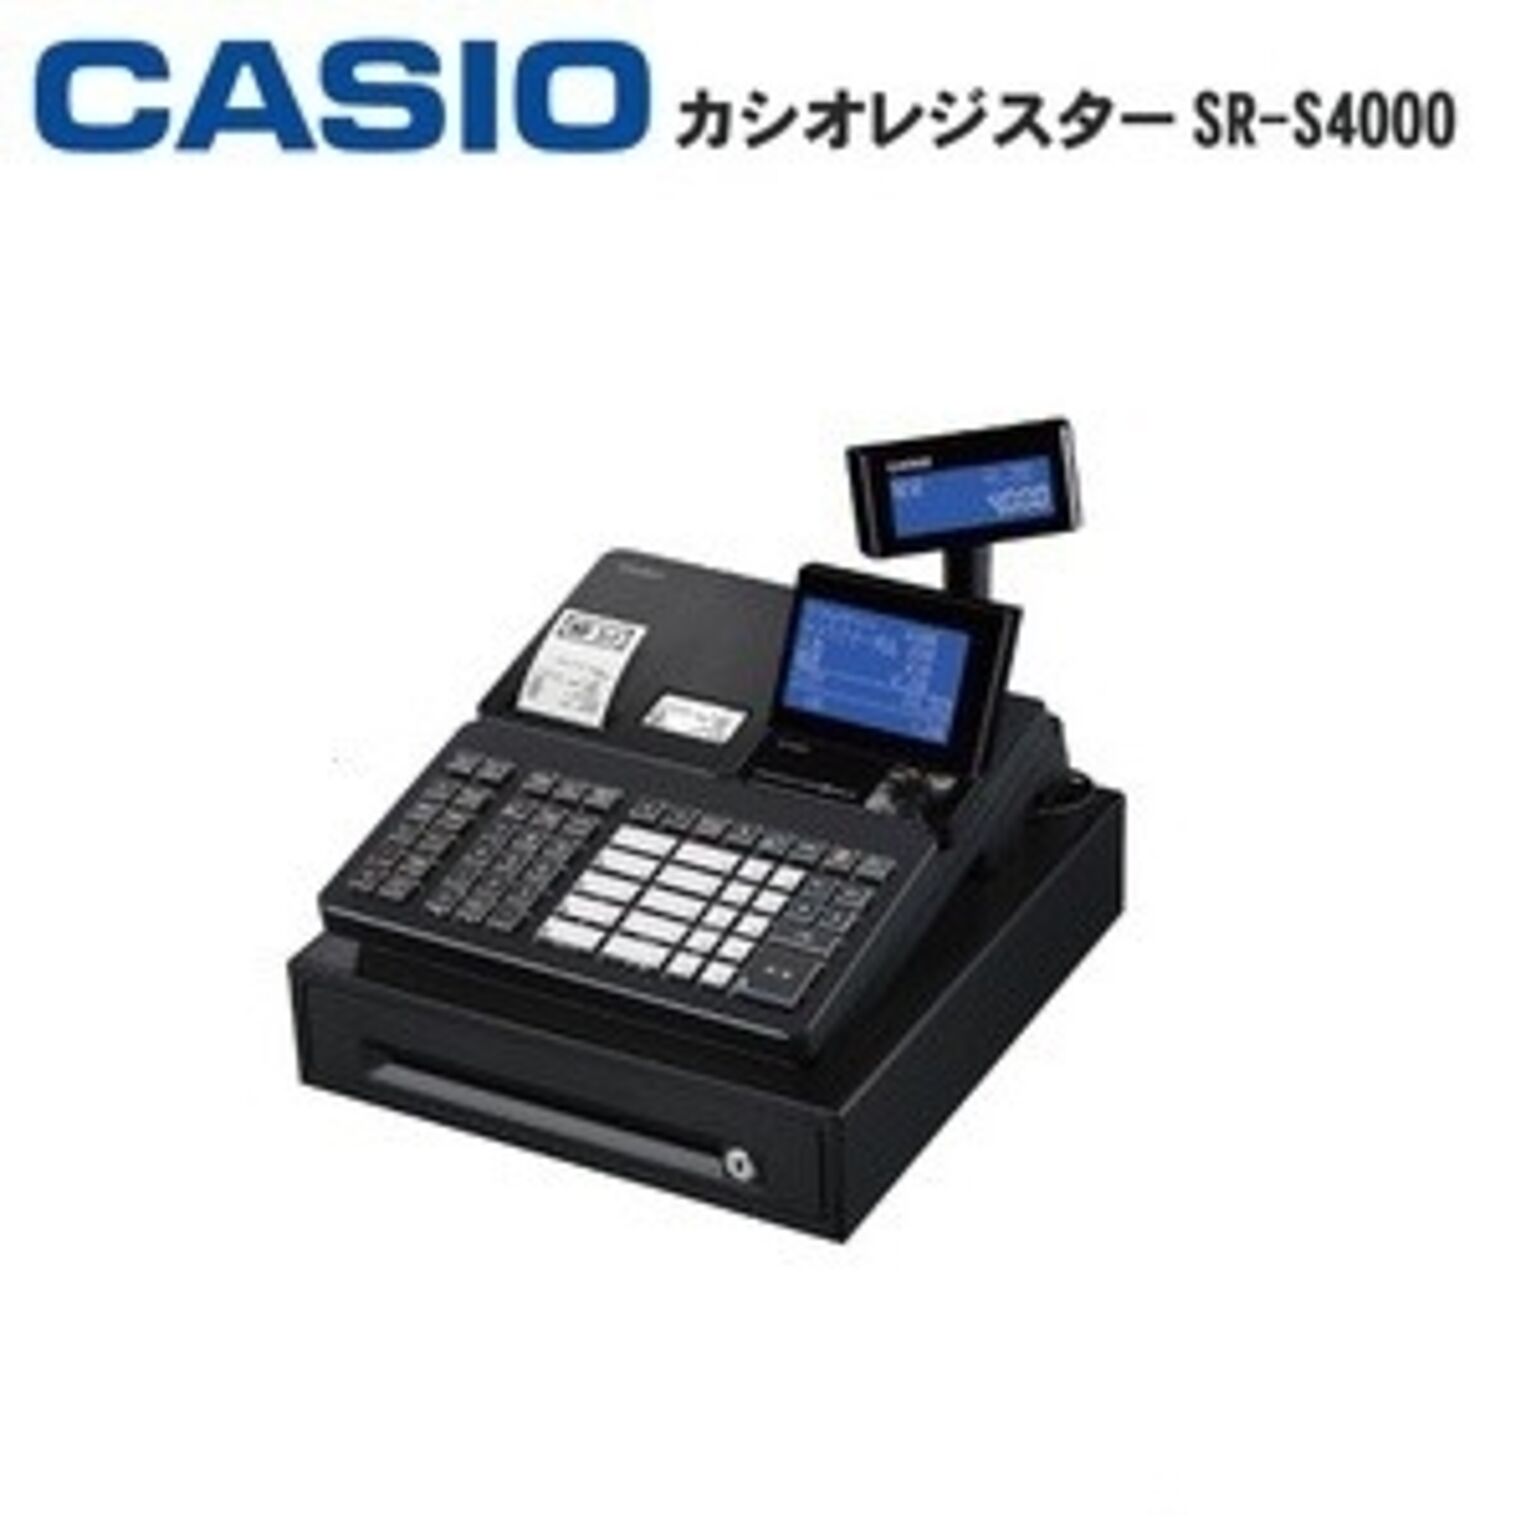 カシオ レジスター SR-S4000-20S Bluetoothレジ ブラック 通販 RoomClipショッピング